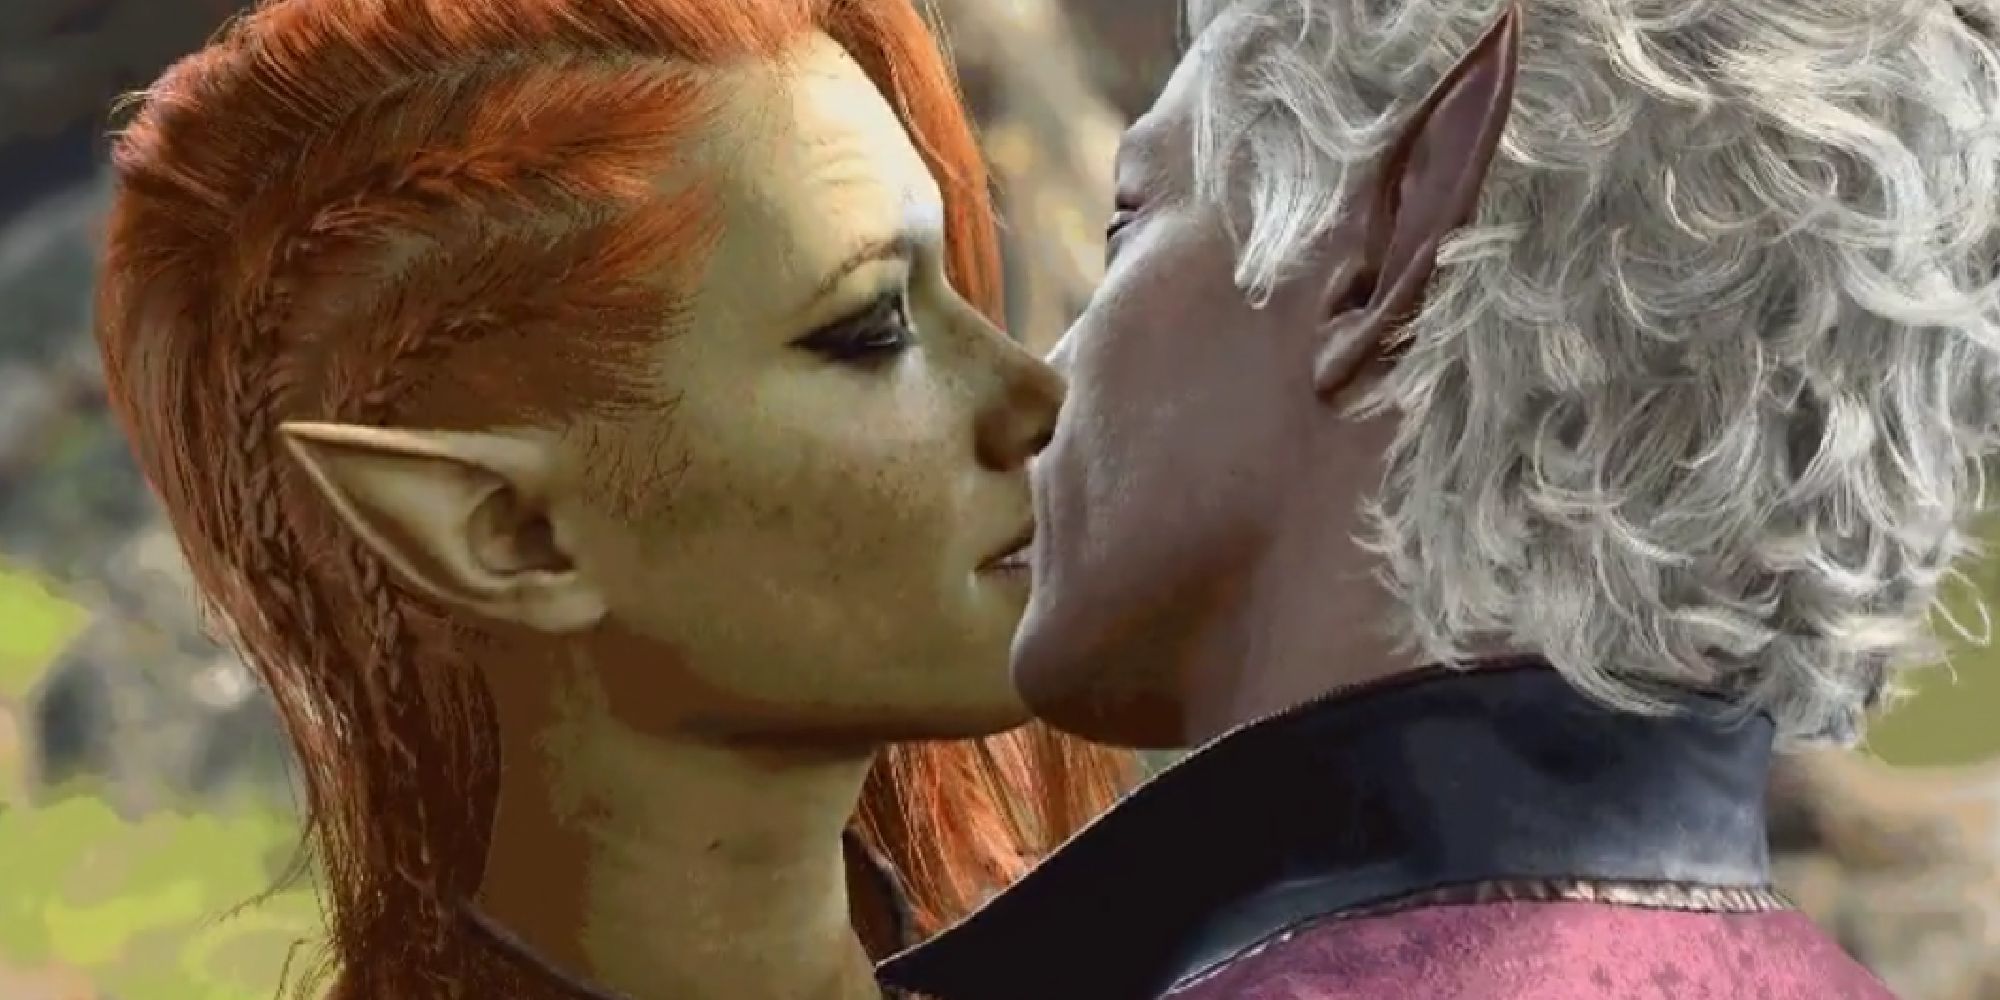 Astarion and Tav kissing in Baldur's Gate 3